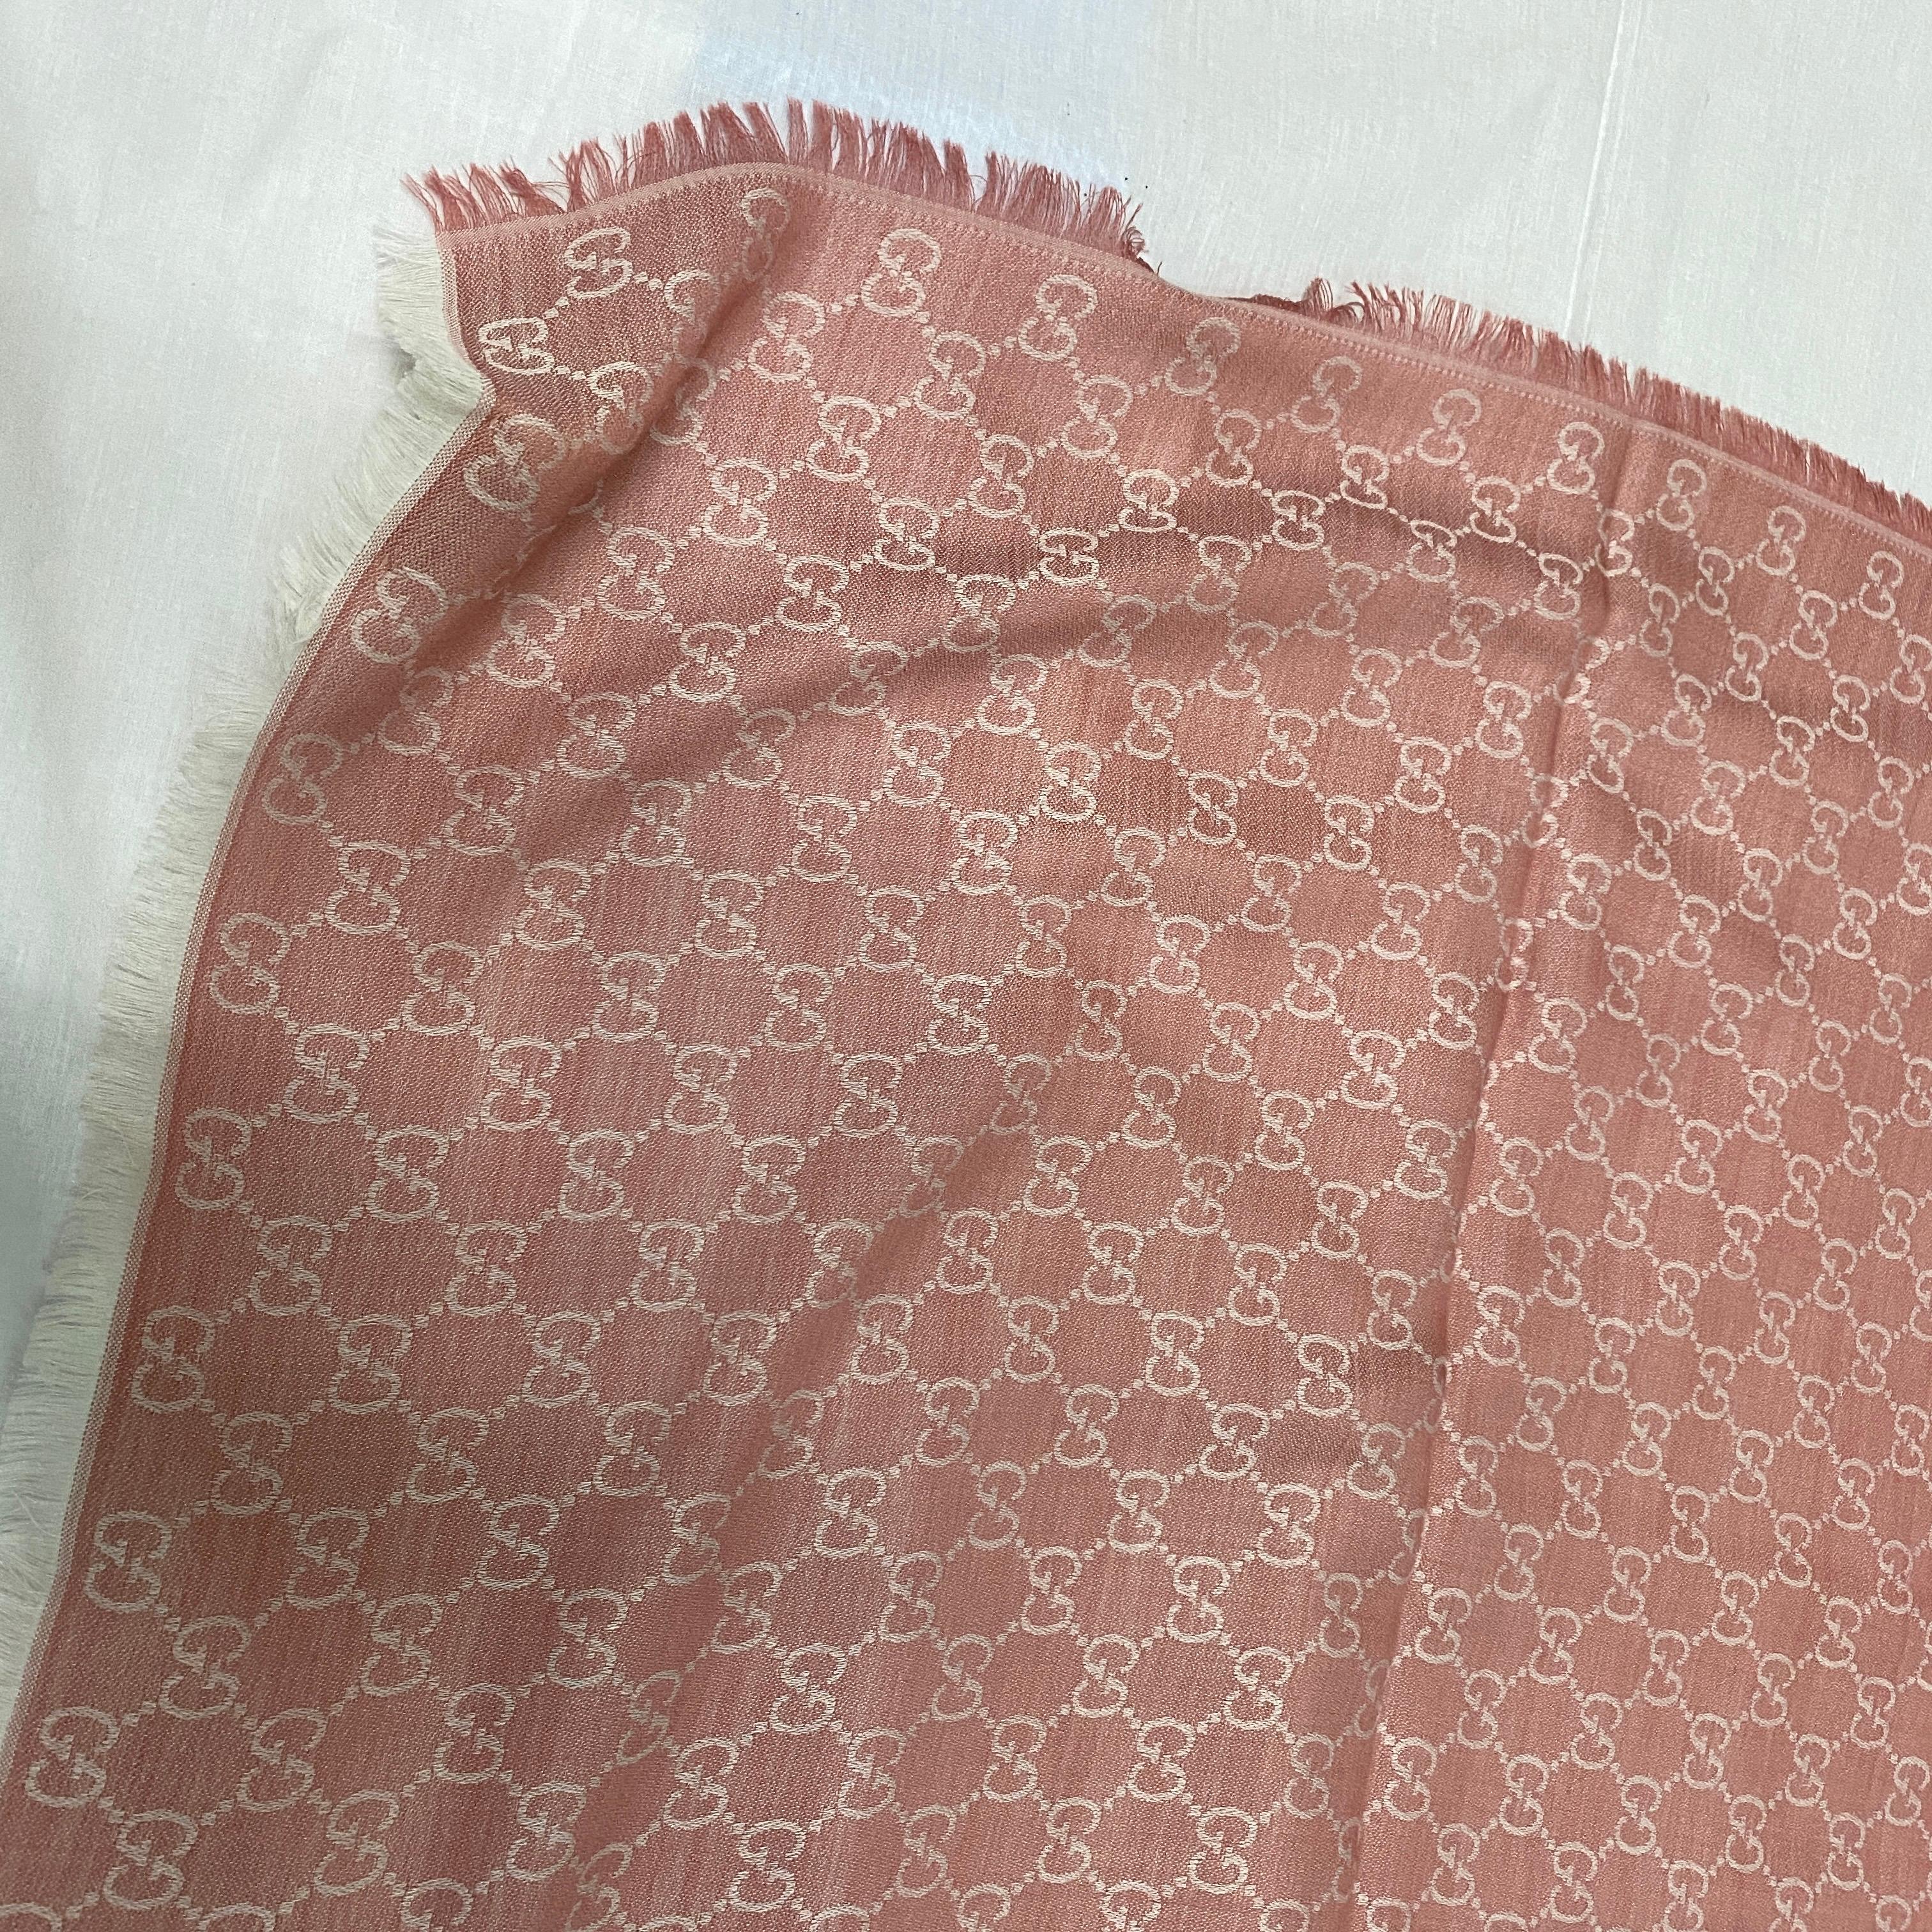 Foulard GUCCI rose en laine et soie avec motif GG. Dimensions 140x140 cm